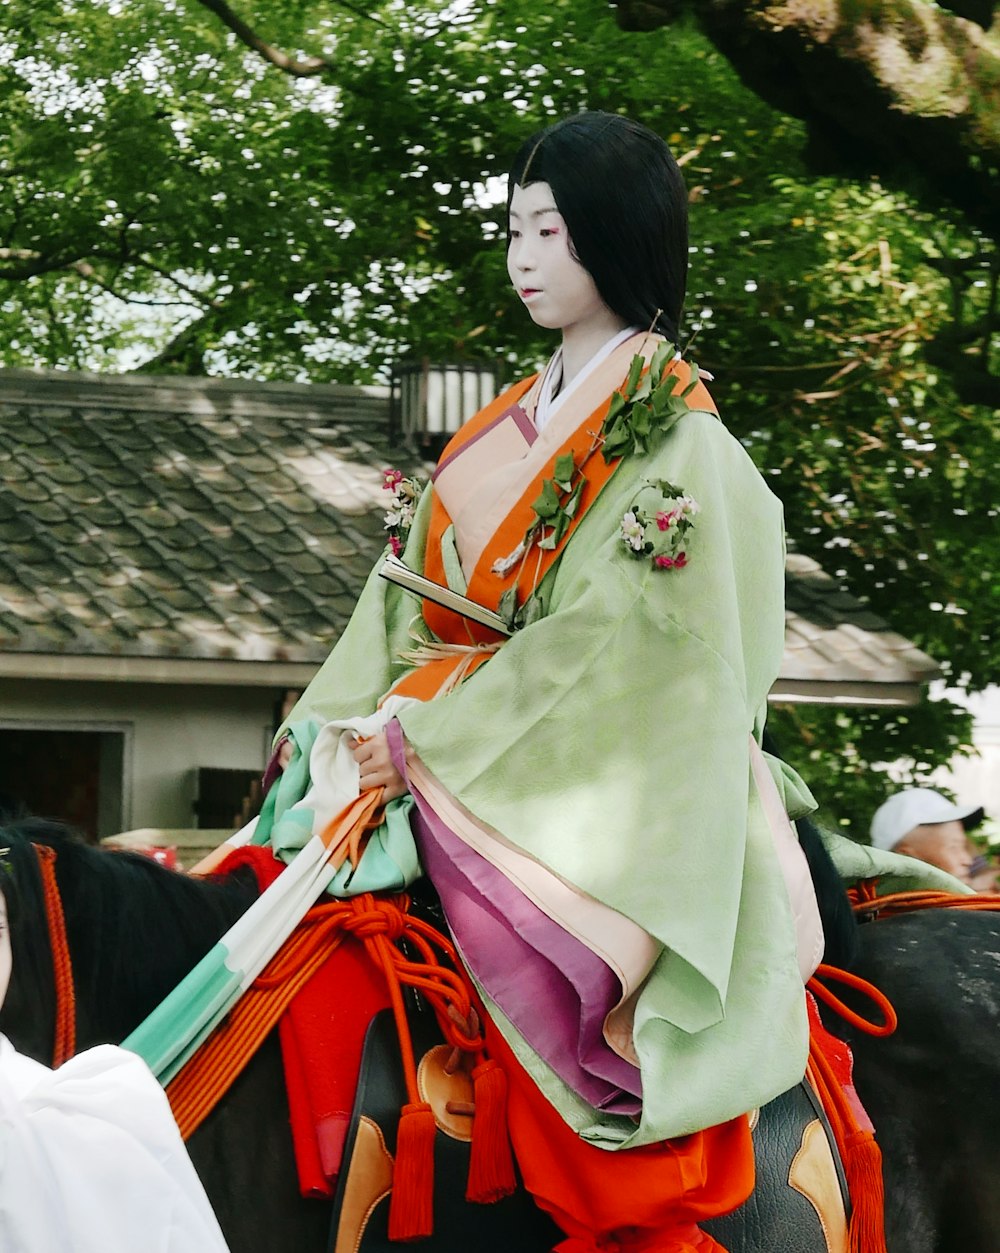 a woman in a kimono riding a horse